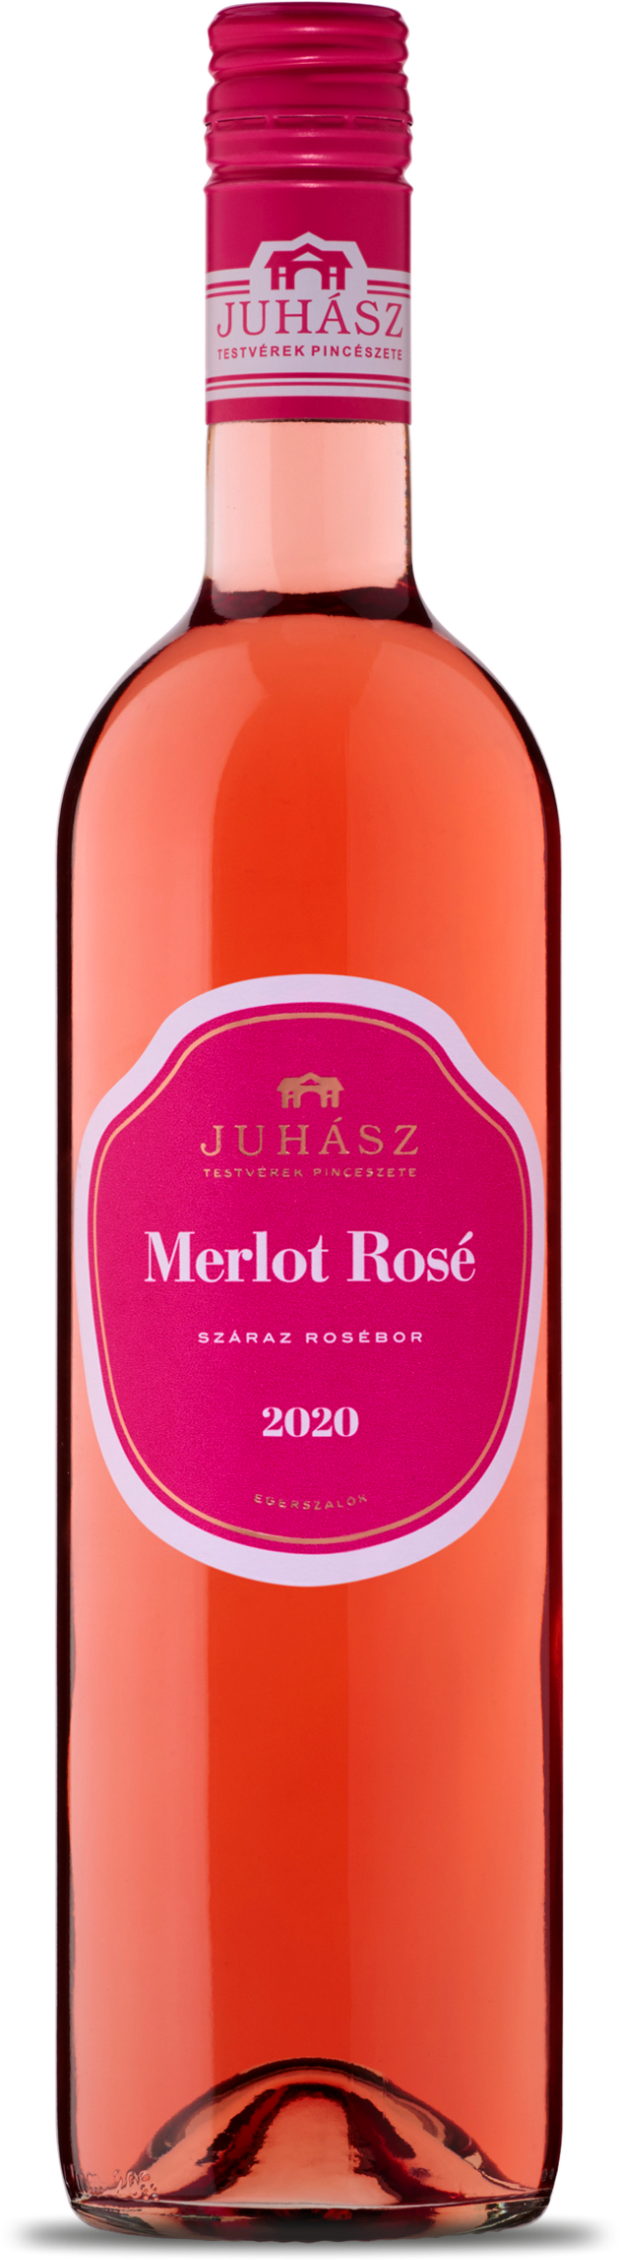 Juhász Merlot Rosé 2020